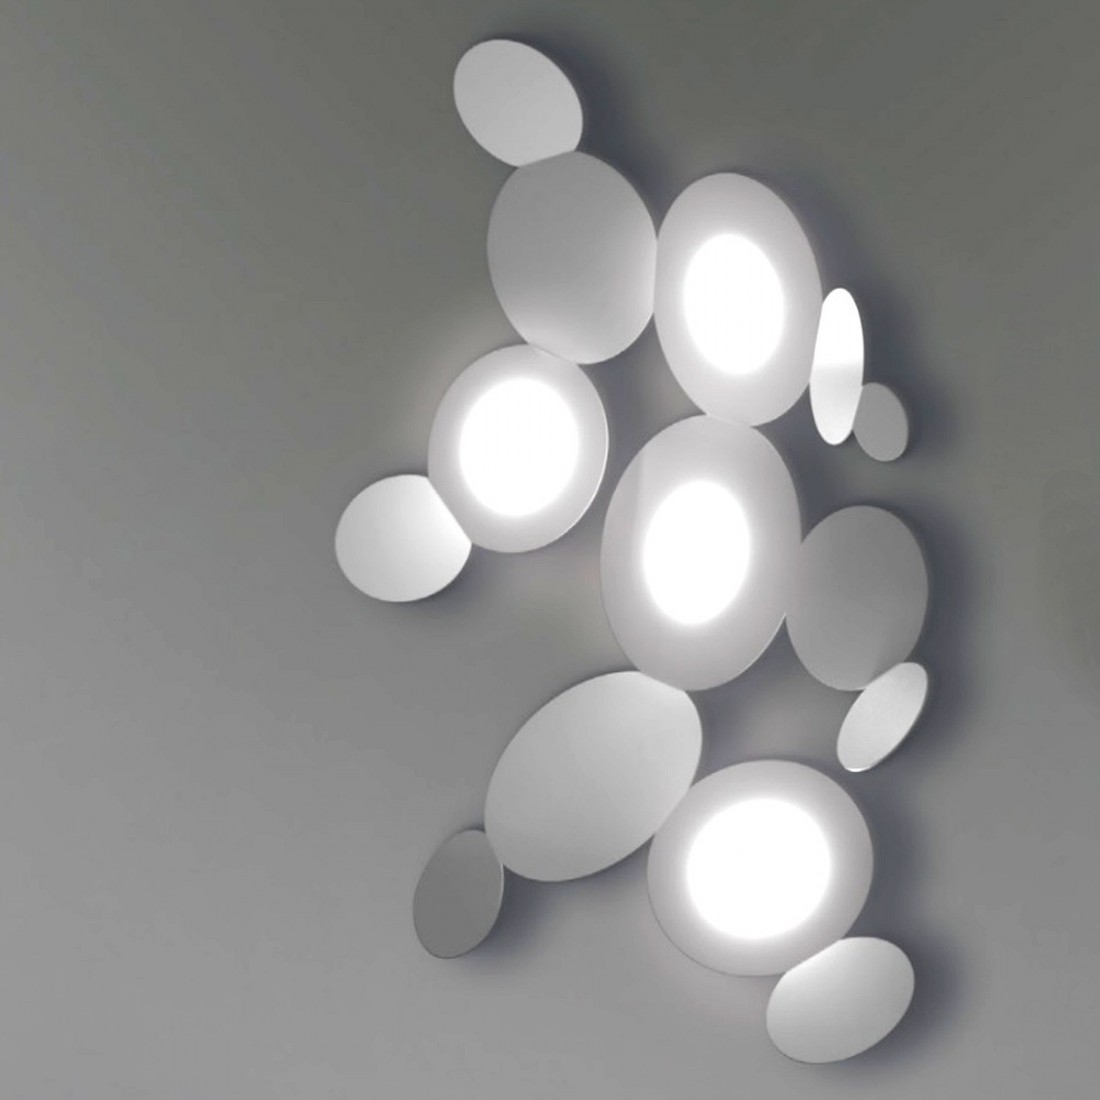 Applique CO-MICKEY 861 4PA 9W LED GX53 metallo verniciato lampada parete ultramoderna luce diffusa interno